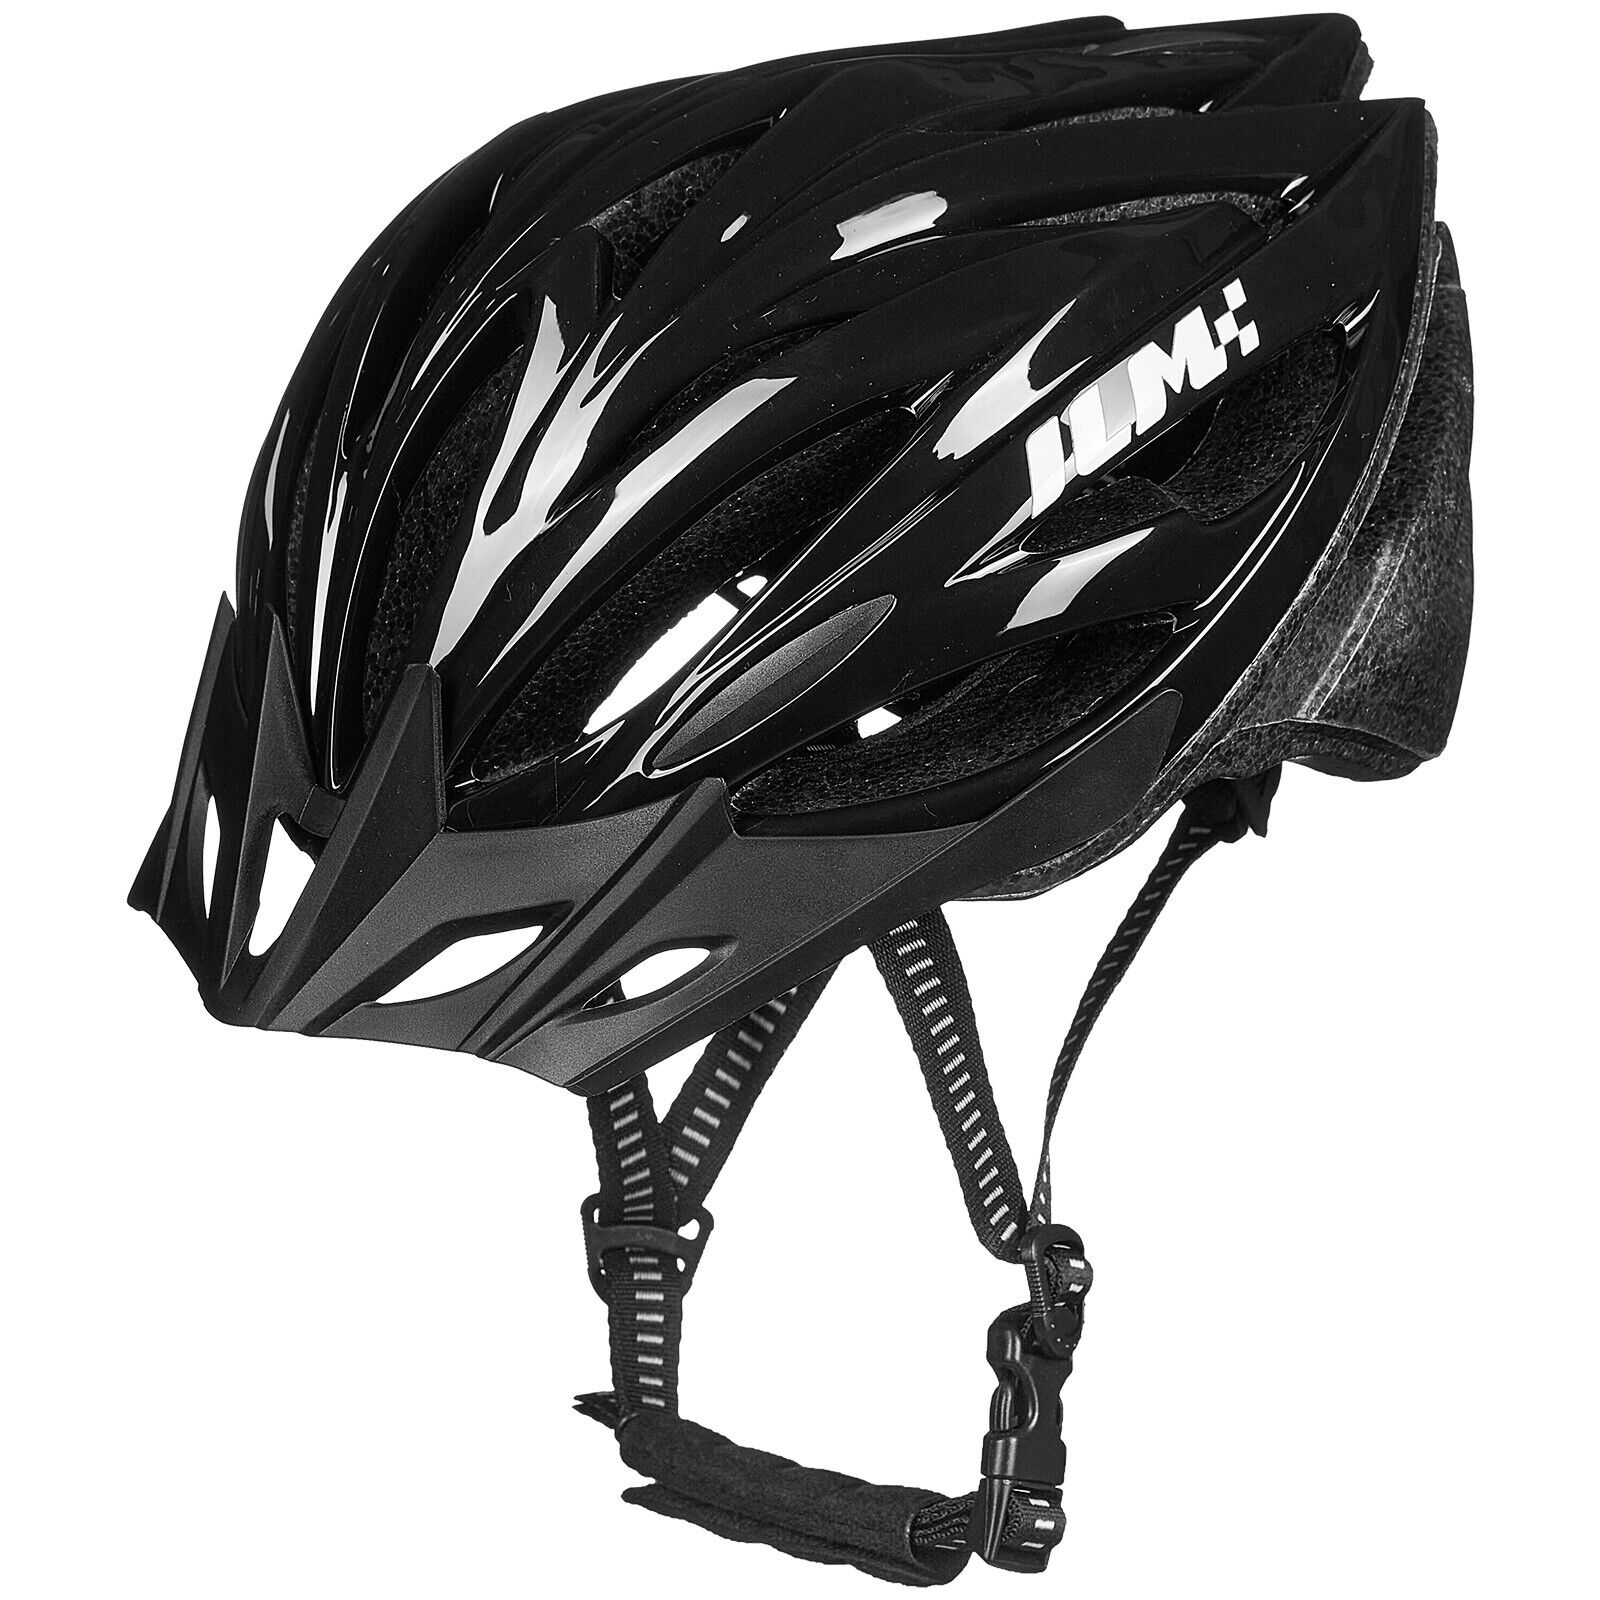 ILM Adult Bike Helmet Lightweight Cycling Helmet Mountain Road Bicycle Helmets